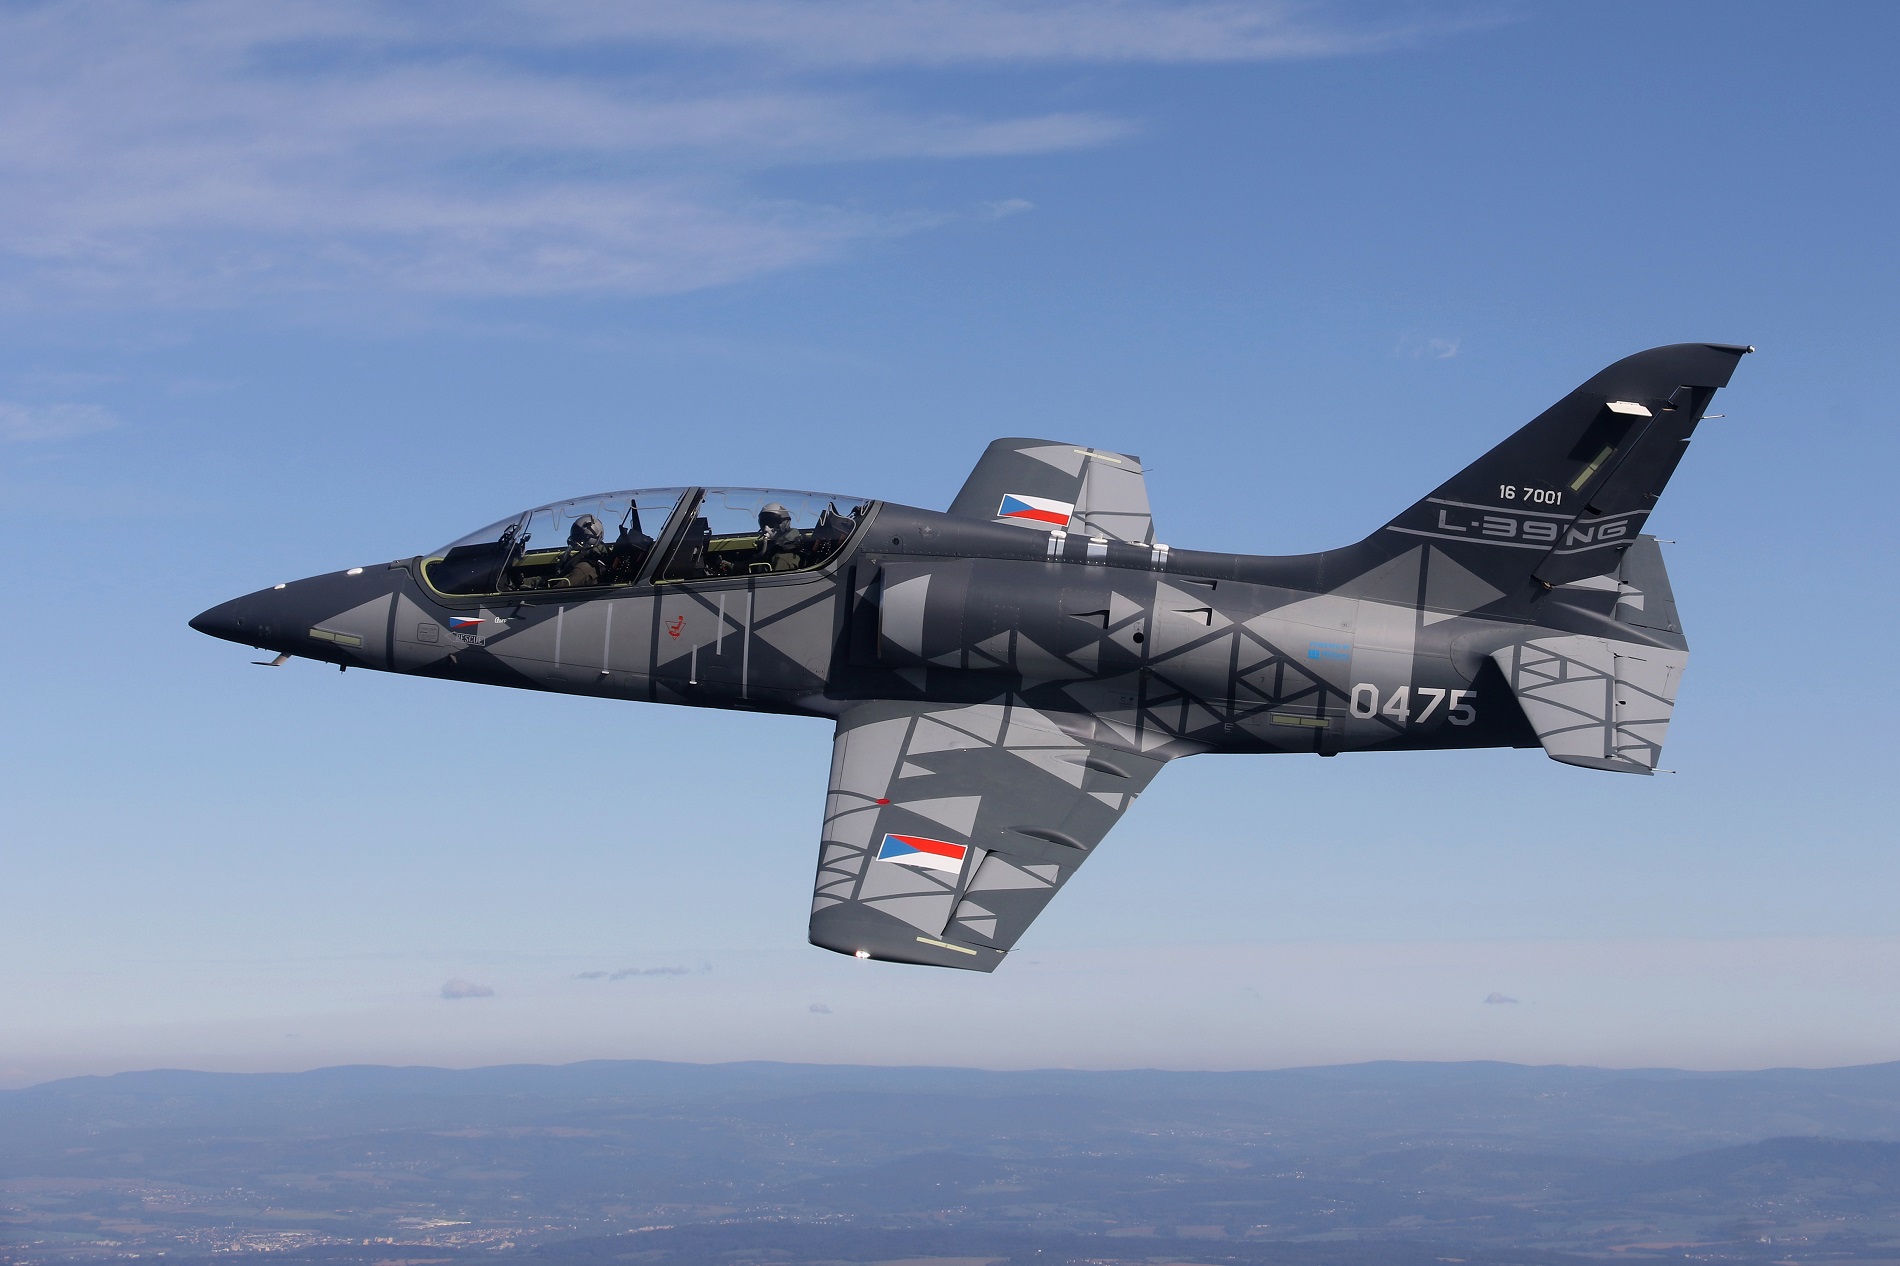 Fatigue Testing Confirms Longer Lifespan of Aero Vodochody L-39NG Aircraft